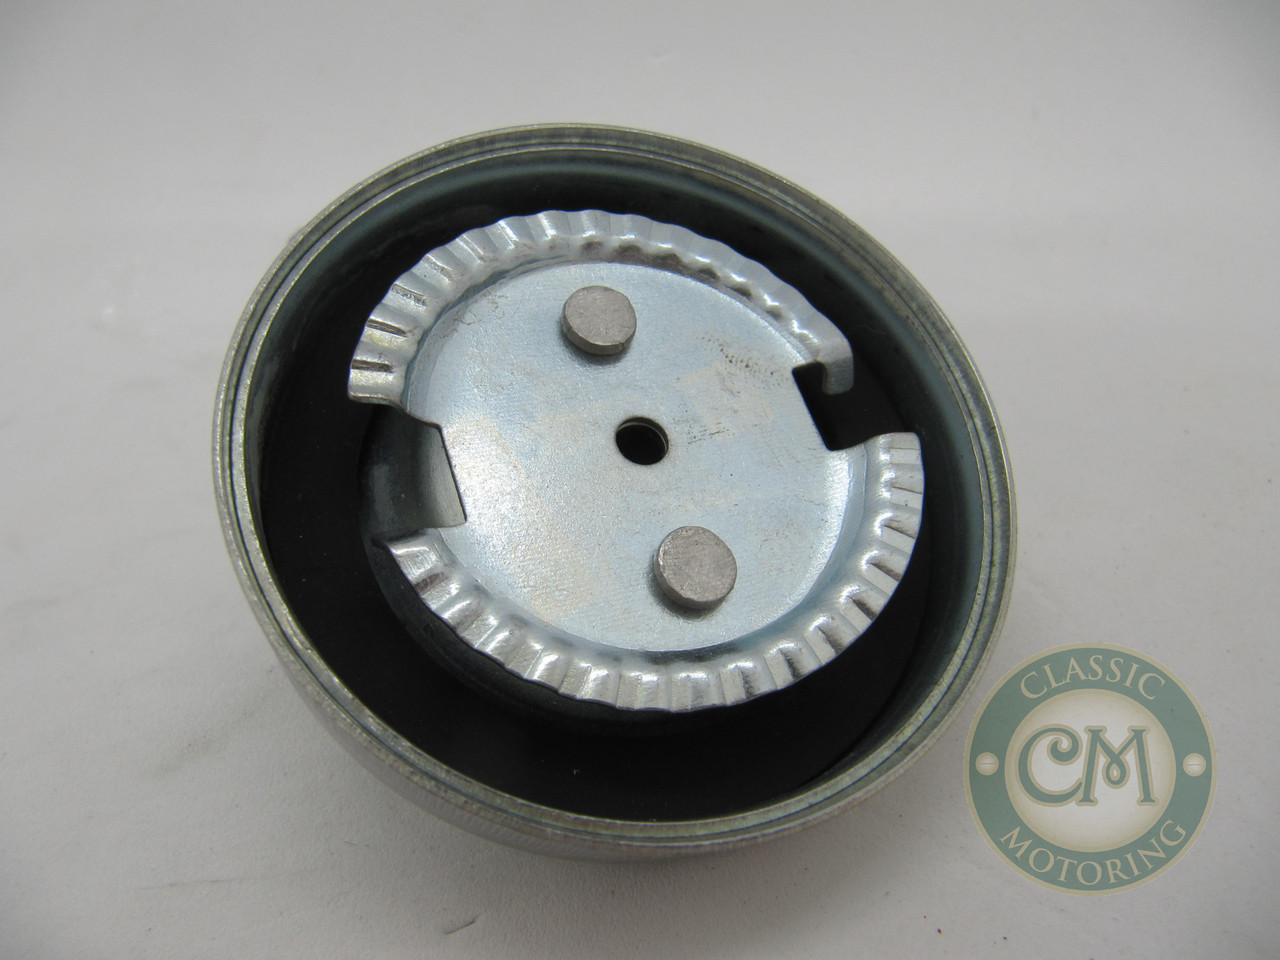 8G612 - Oil Filler Cap - Metal